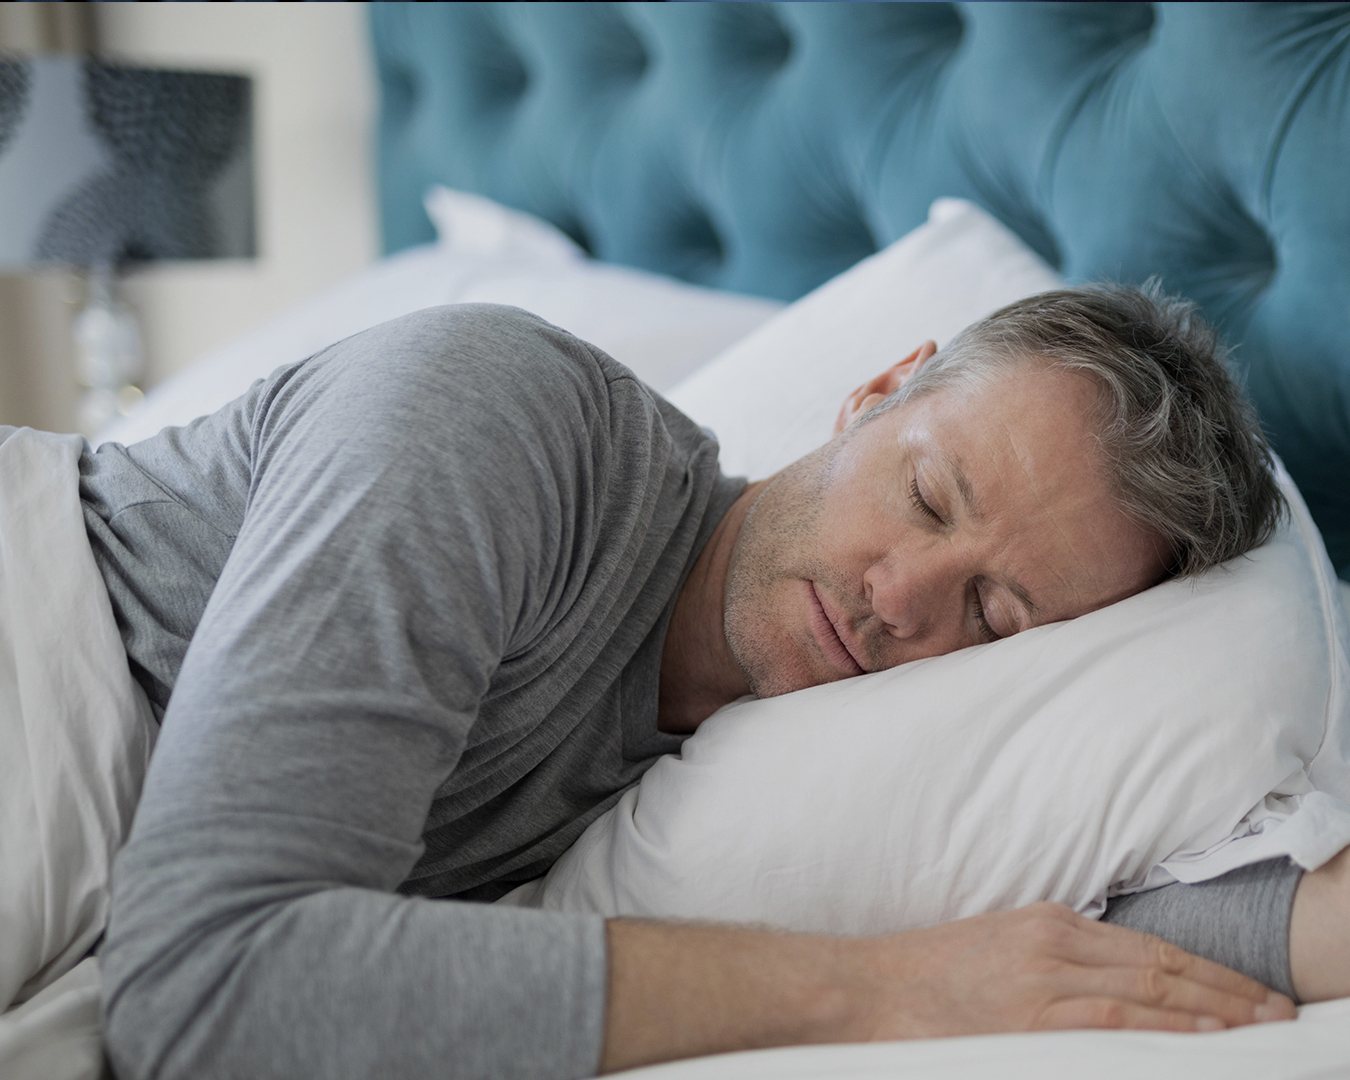 Custom Oral Appliance Improves Your Sleep